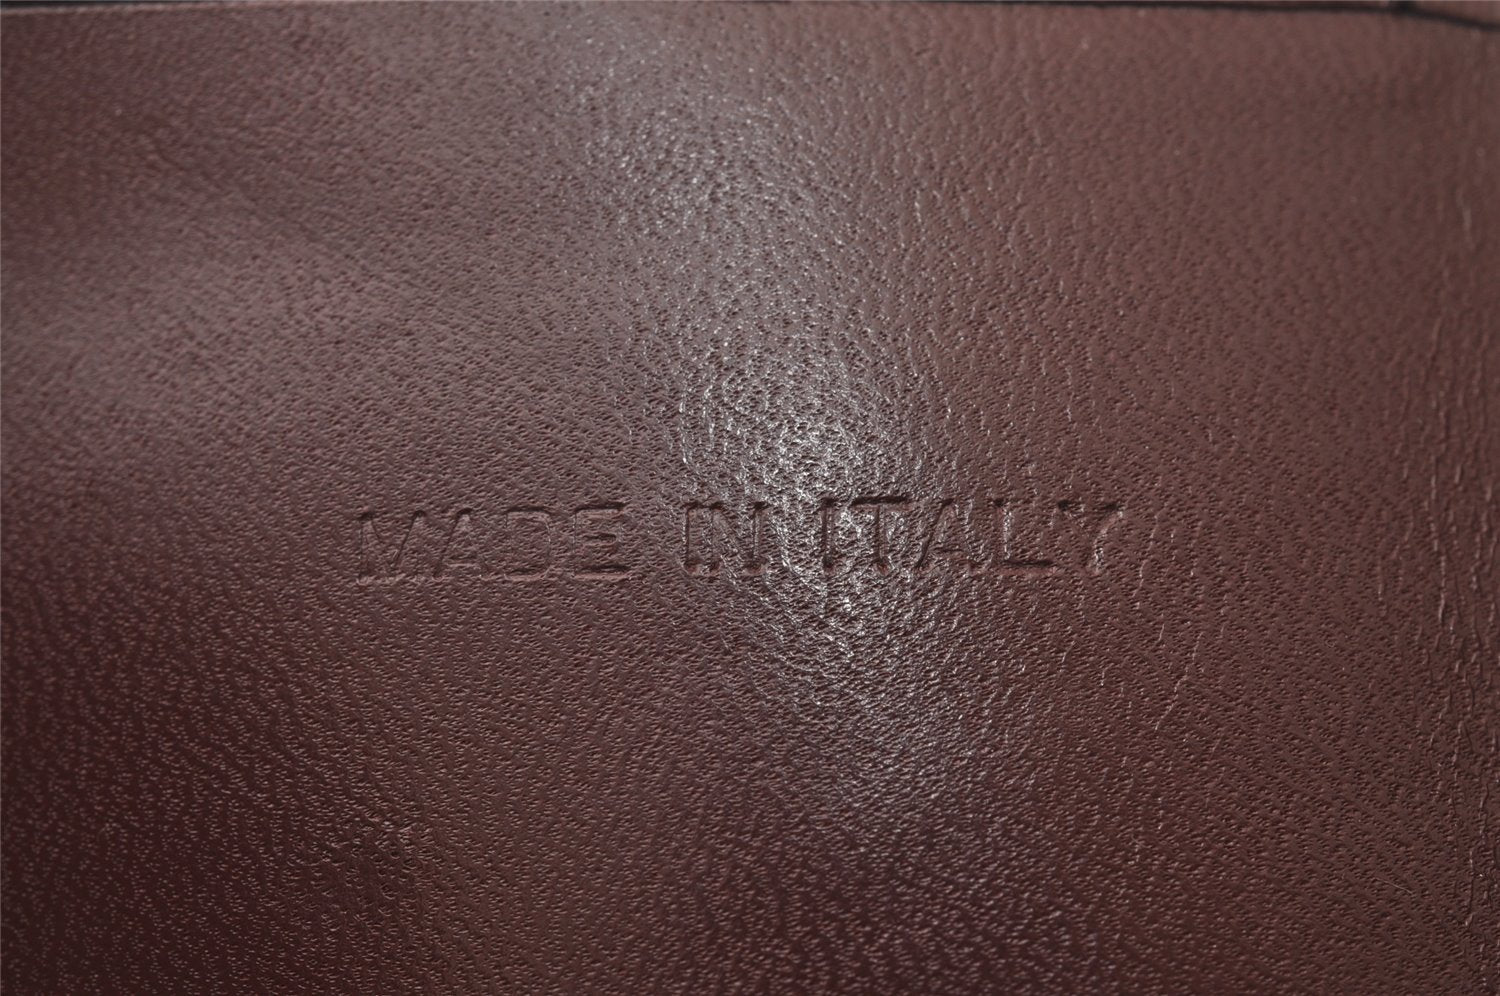 Authentic Cartier Must de Cartier Long Wallet Purse Leather Bordeaux Red 3189I